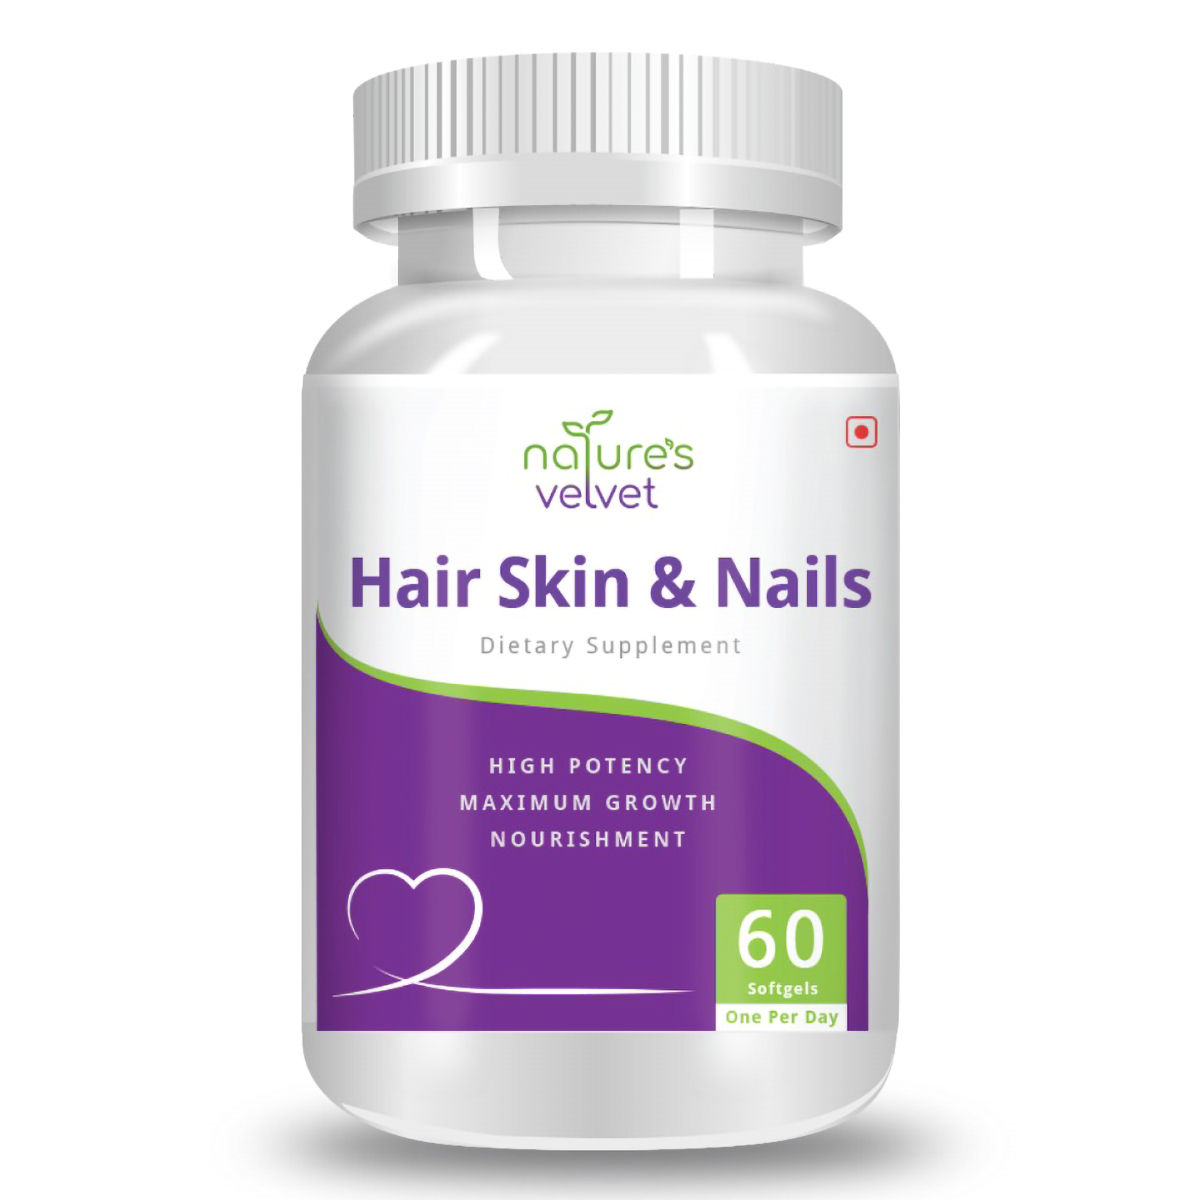 Buy Nature's Velvet Hair Skin & Nails, 60 Softgels Online